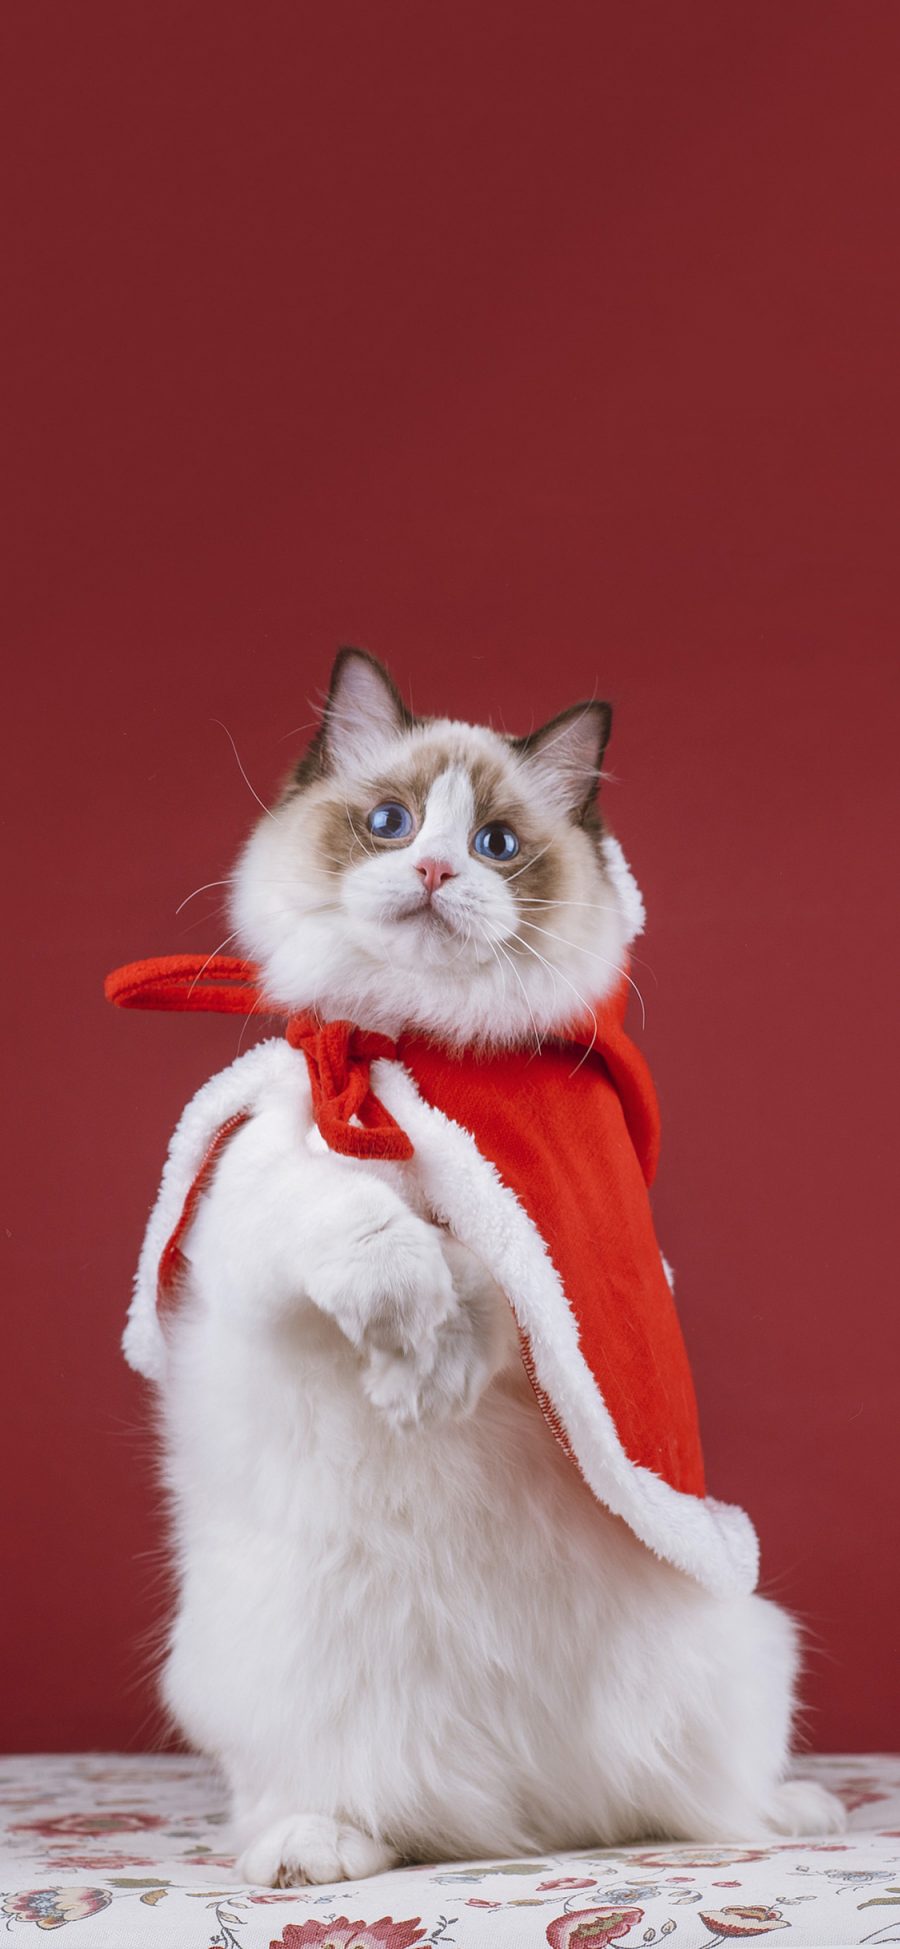 [2436×1125]猫咪 可爱 喵星人 宠物 红色 斗篷 苹果手机壁纸图片